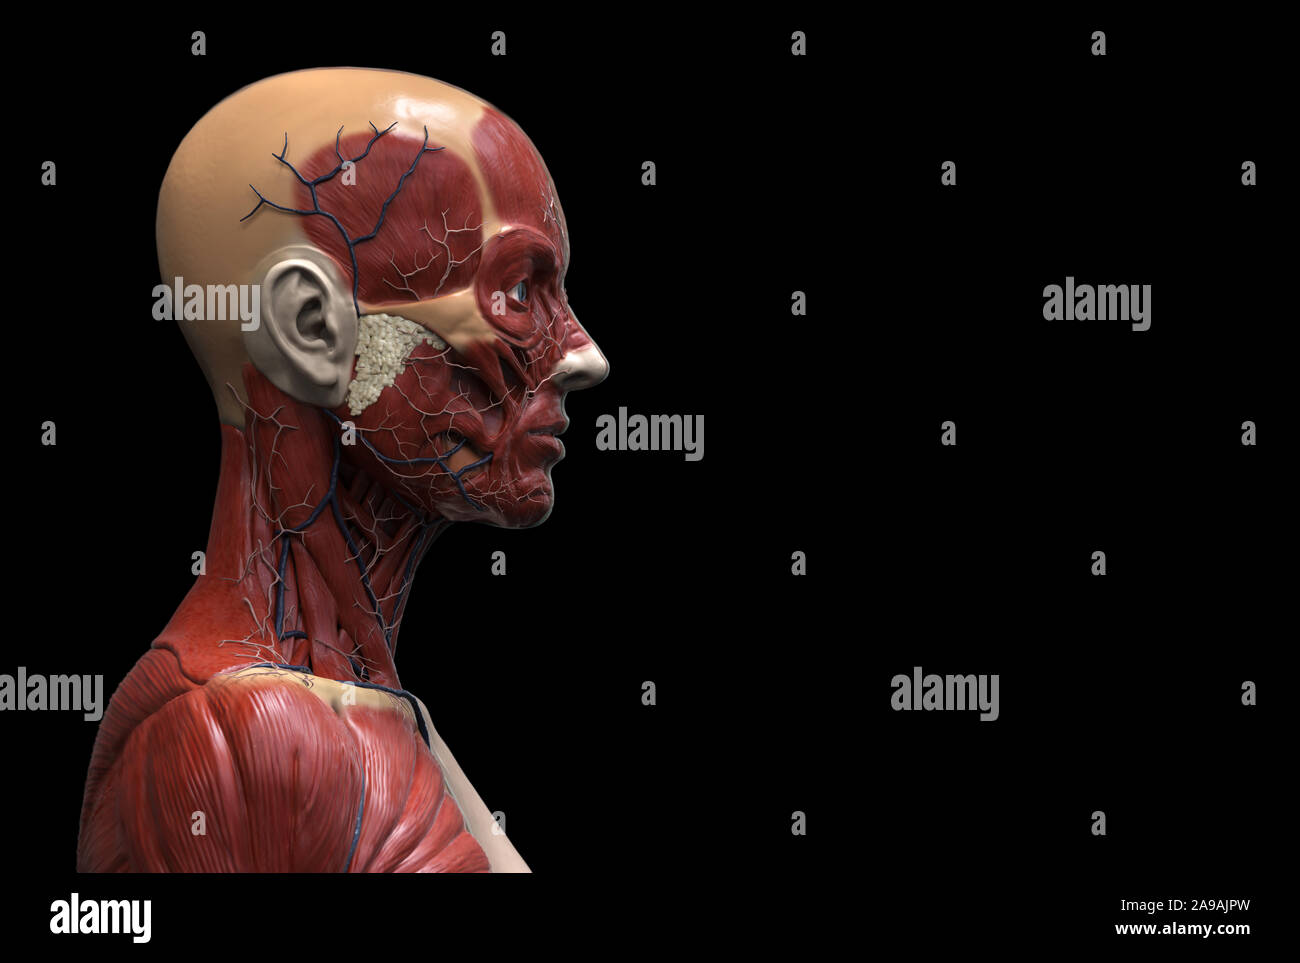 Corps humain anatomie d'une femme d'une structure musculaire, femelle vue de face Vue de côté et vue en perspective, 3D render Banque D'Images